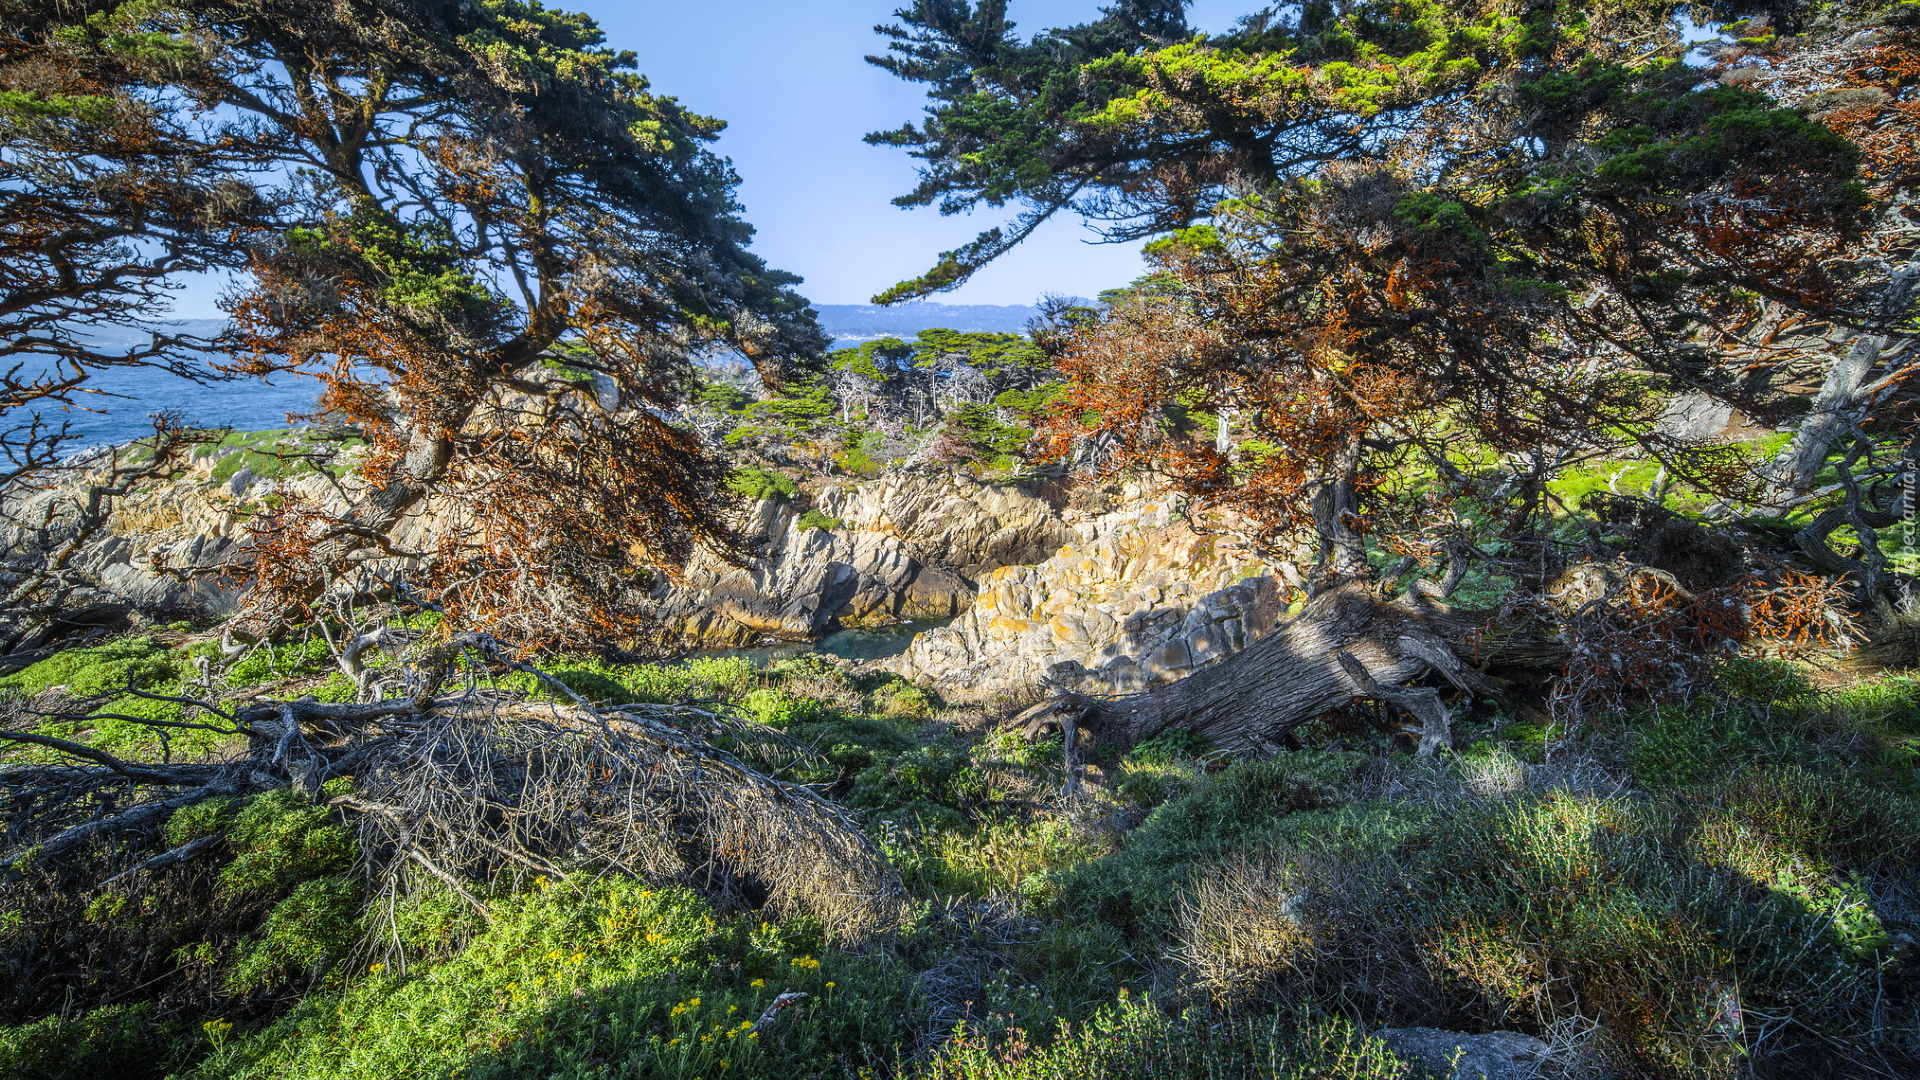 Morze, Skały, Drzewa, Cyprysy wielkoszyszkowe, Rośliny, Rezerwat przyrody, Point Lobos, Kalifornia, Stany Zjednoczone